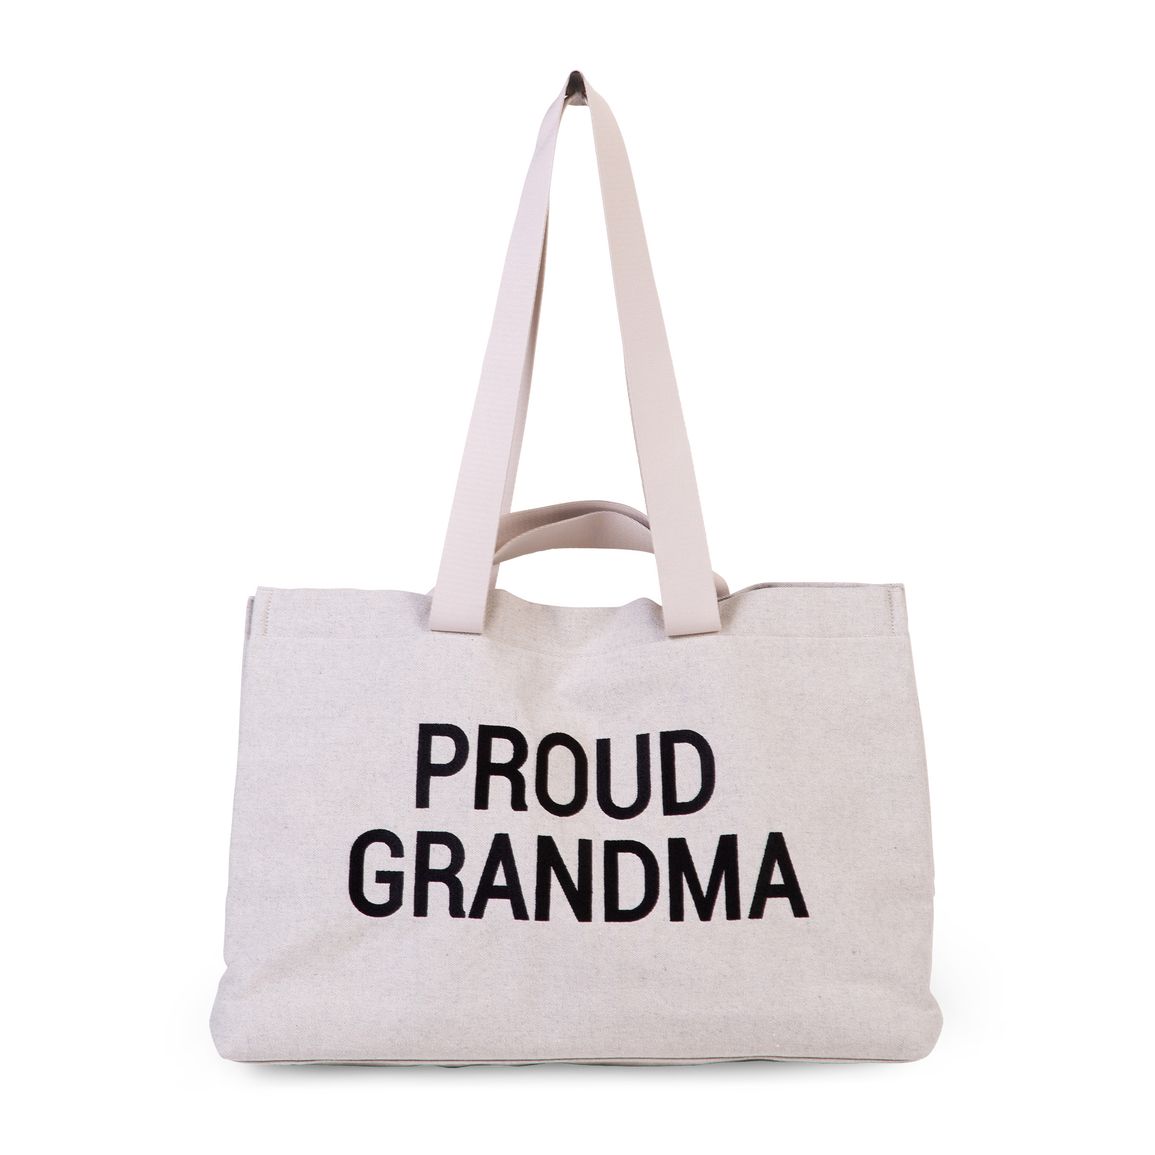 Cestovná taška Grandma Canvas Off White